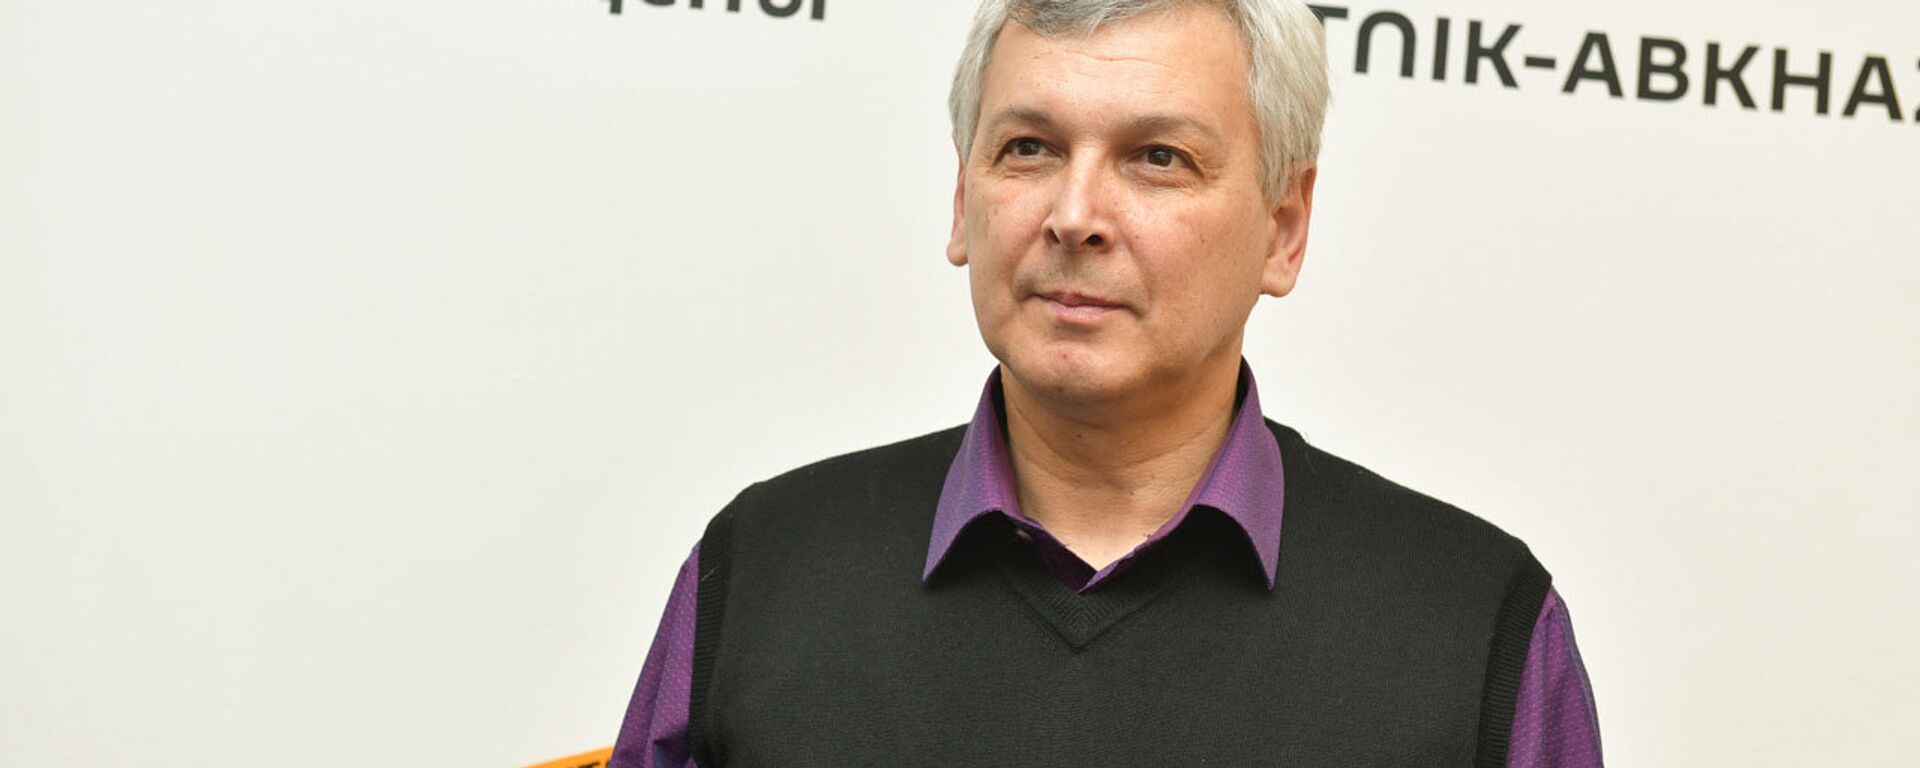 Сергей Сущенко - Sputnik Абхазия, 1920, 04.11.2018